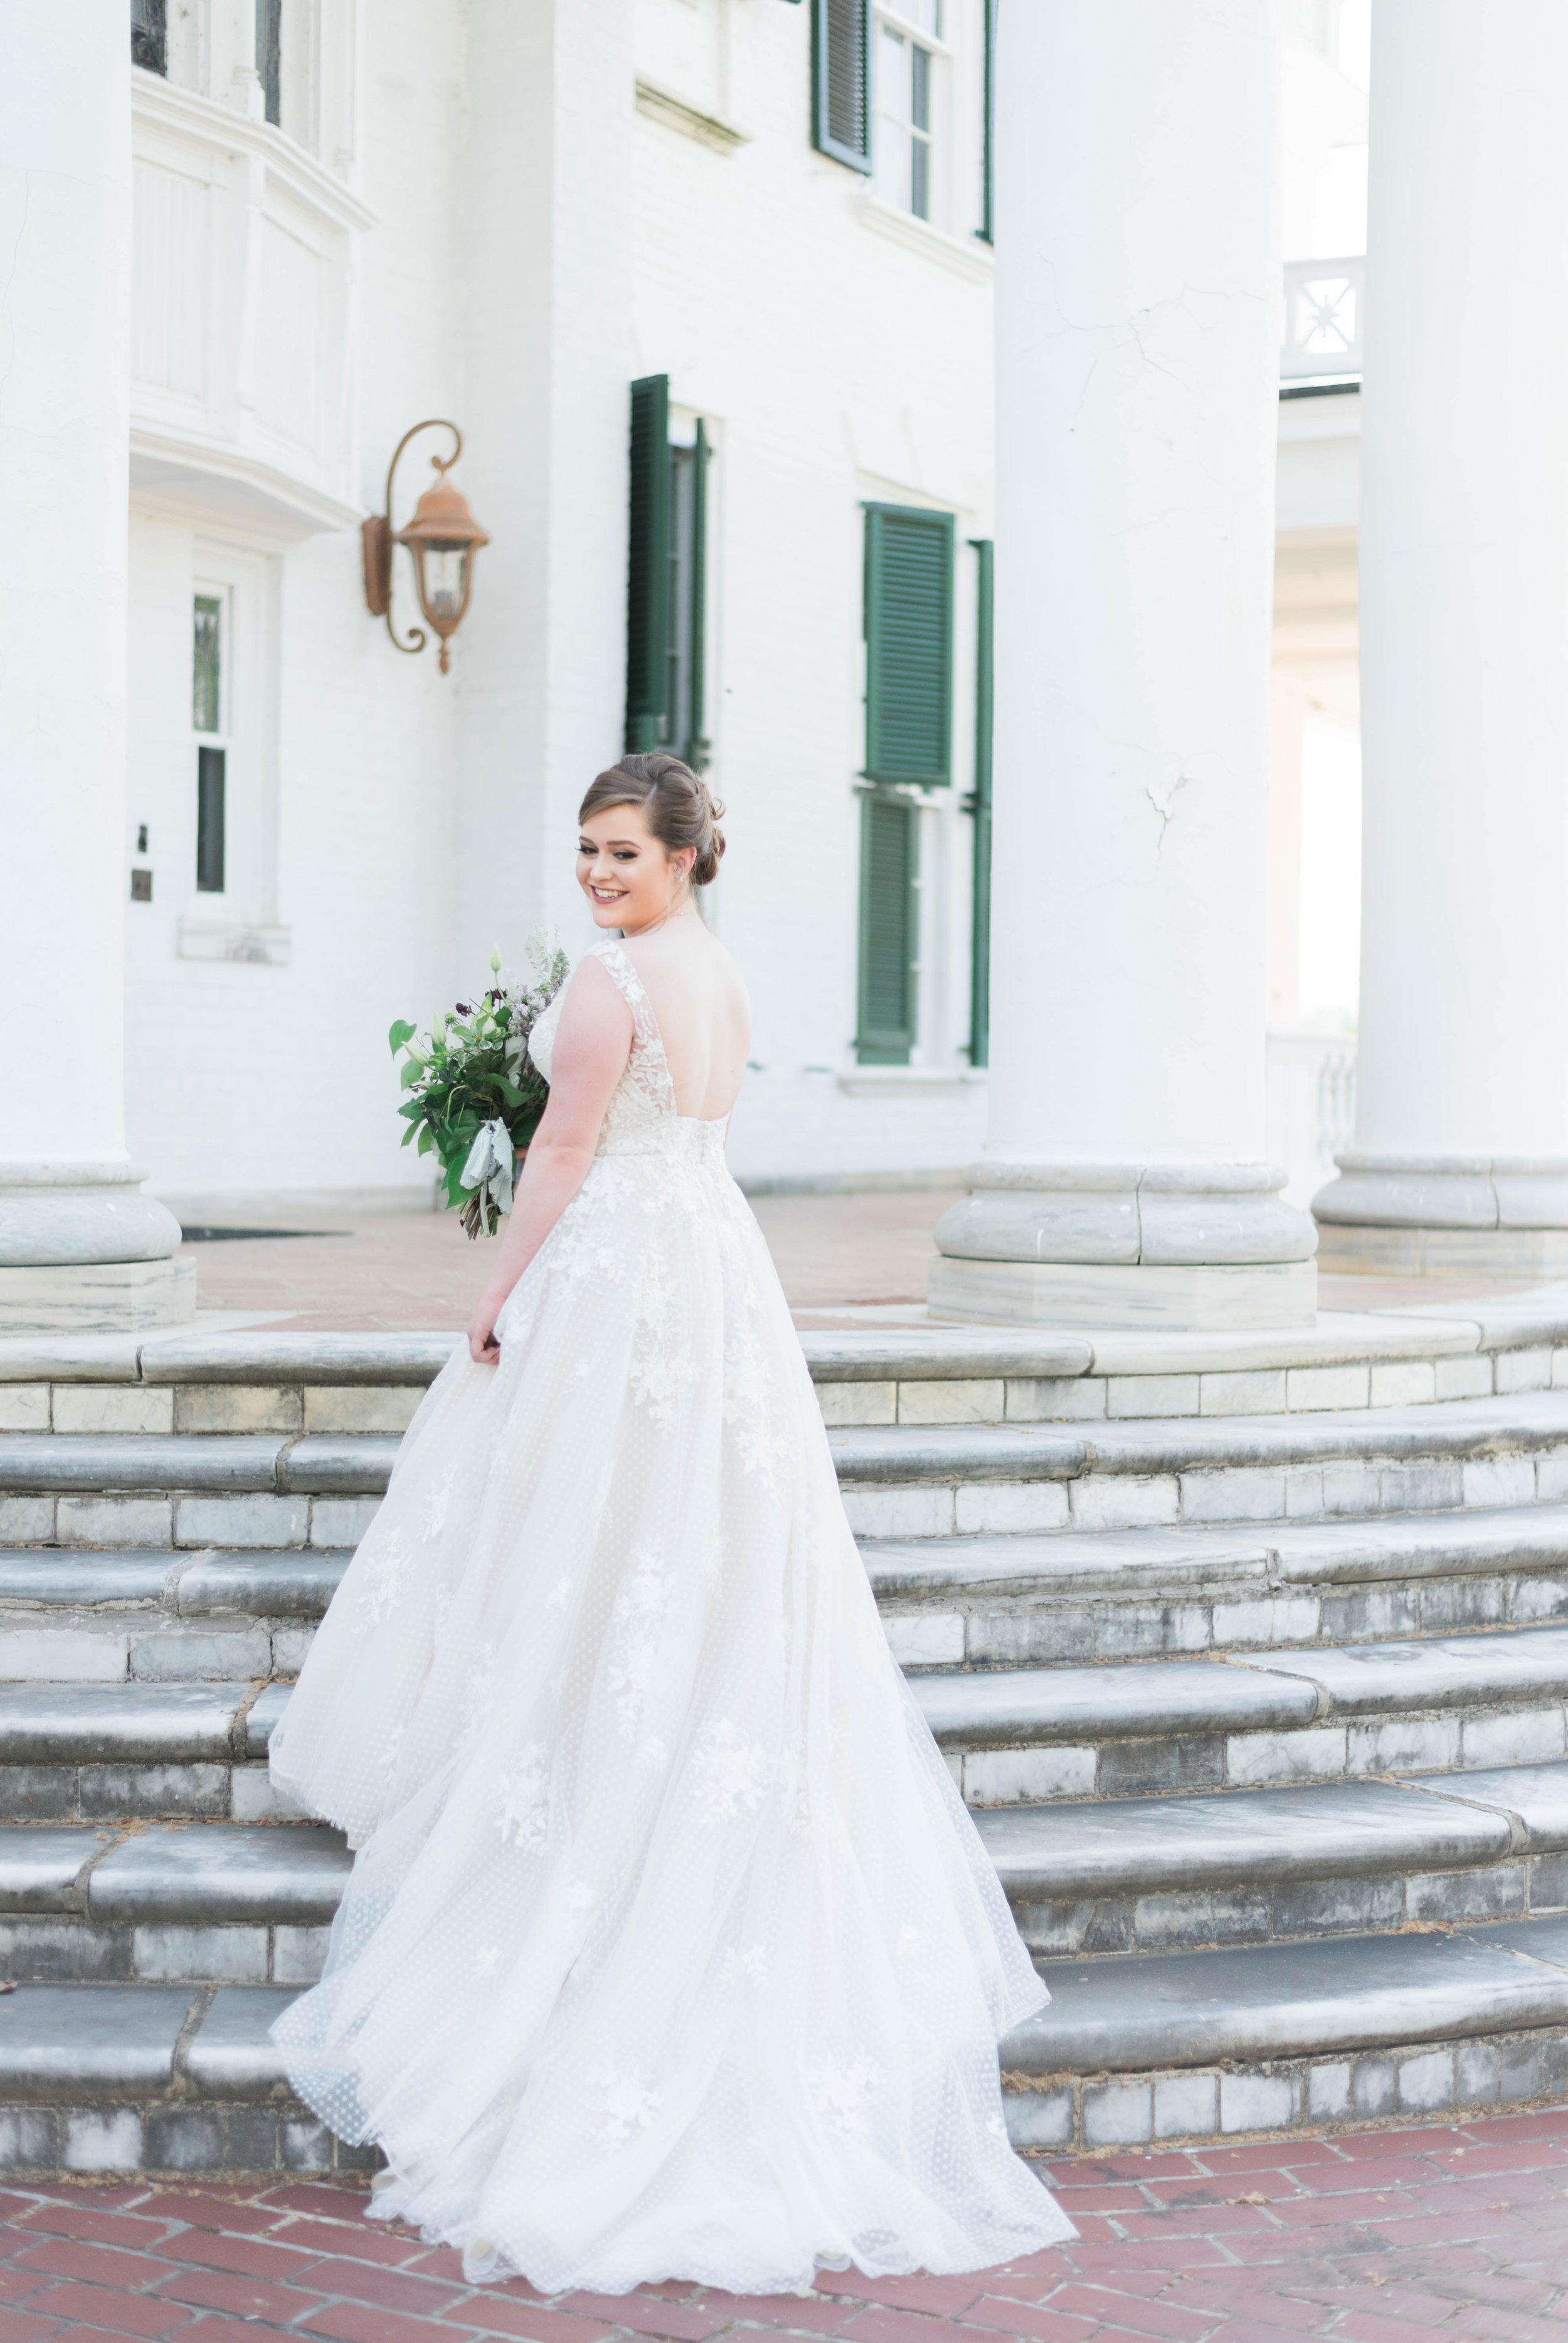 Jillian+Abi_OakridgeEstate_Wedding_VirginiaWeddingPhotographer_SpringWedding 36.jpg